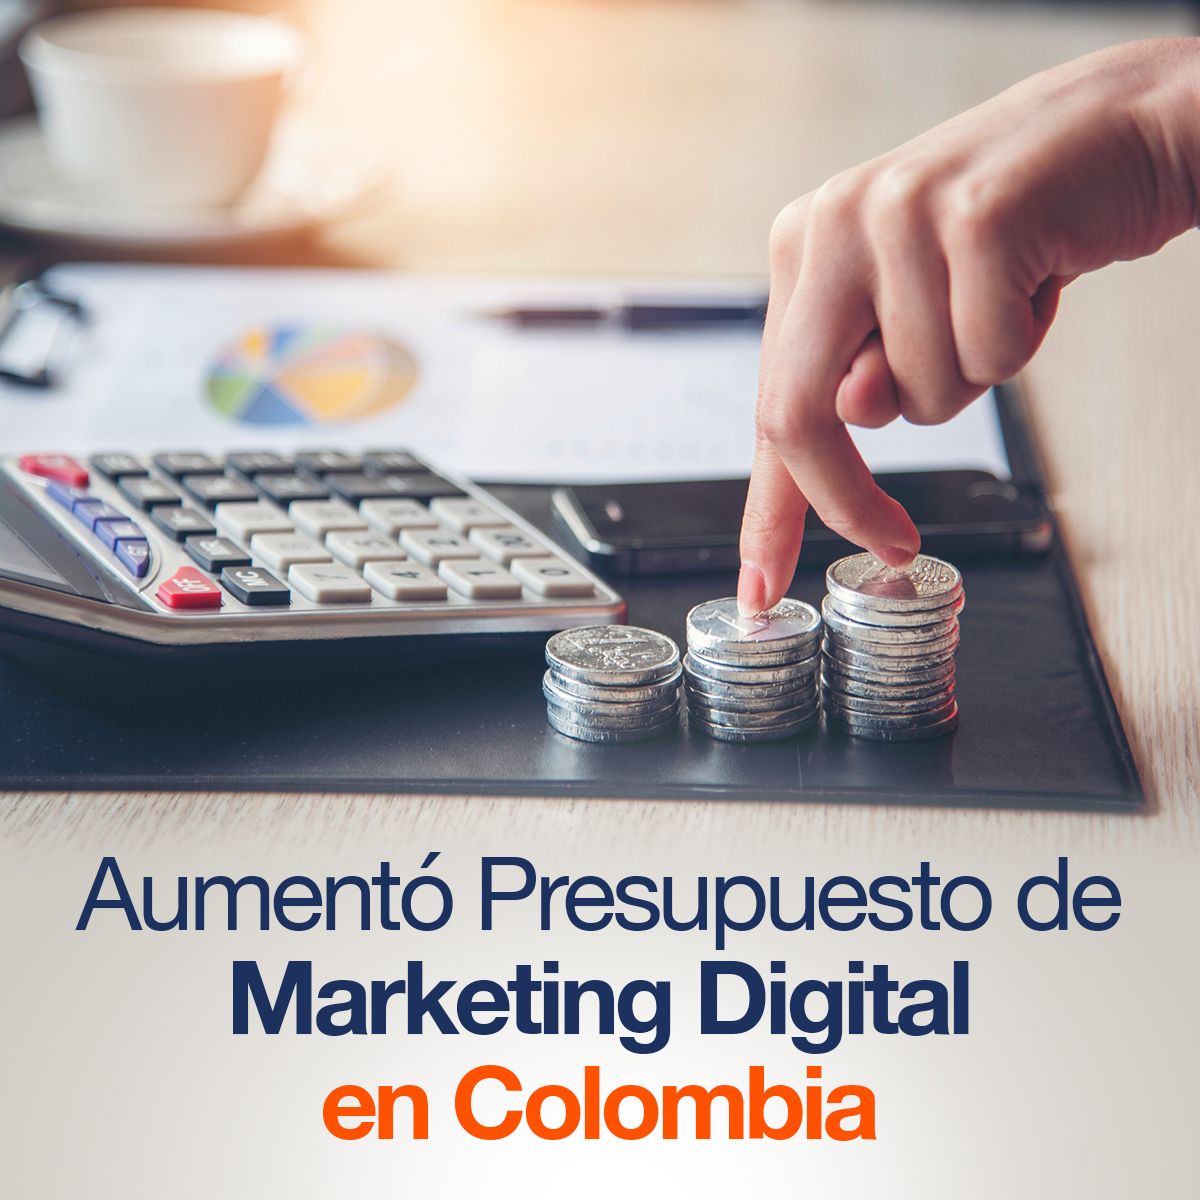 Aumentó Presupuesto de Marketing Digital en Colombia